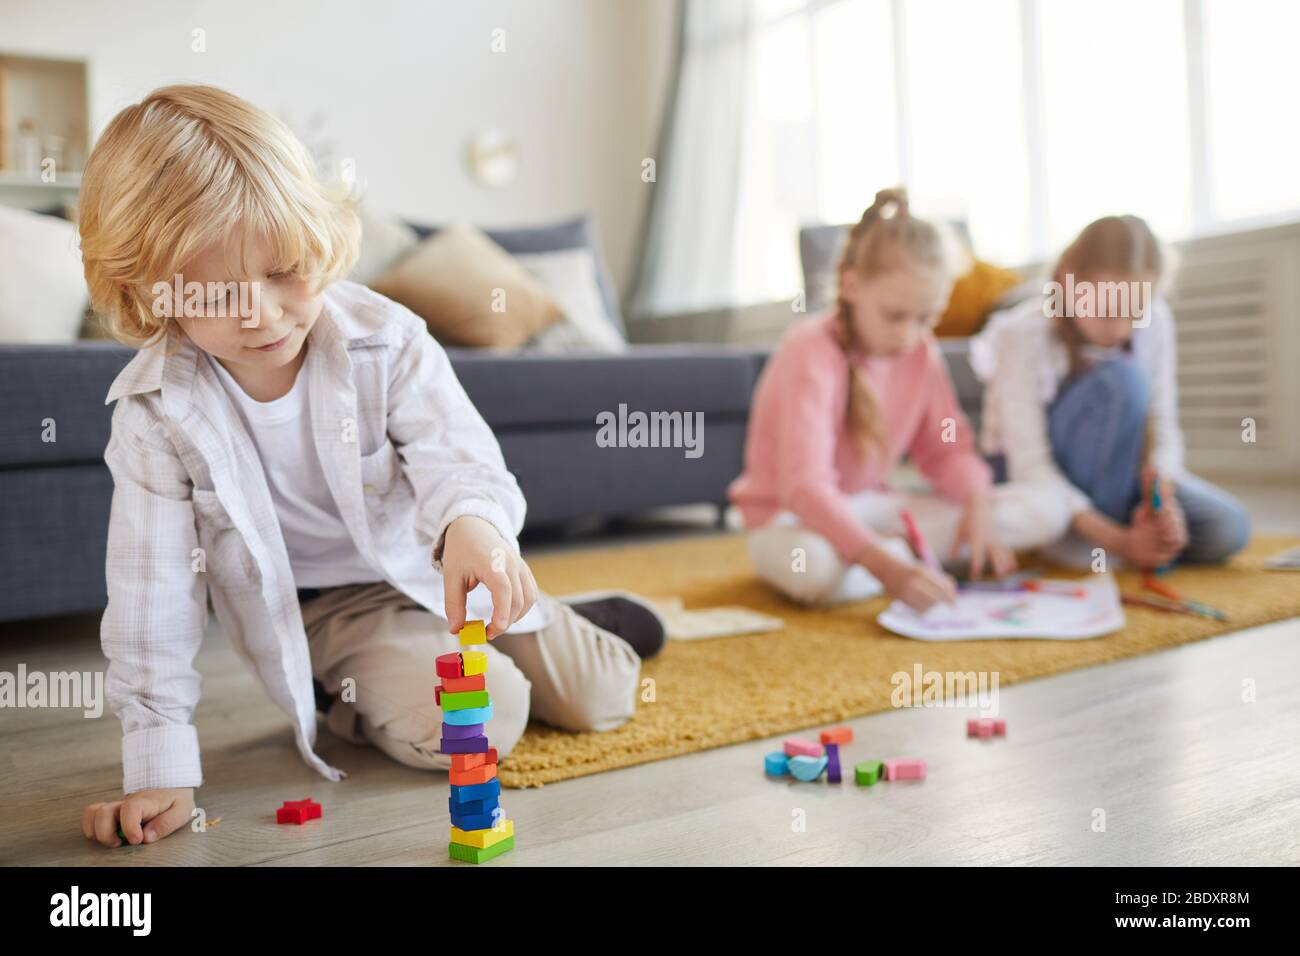 Petit garçon avec cheveux blond jouant sur le sol avec des jouets avec ses deux sœurs dessinant dans l'arrière-plan dans le salon Banque D'Images